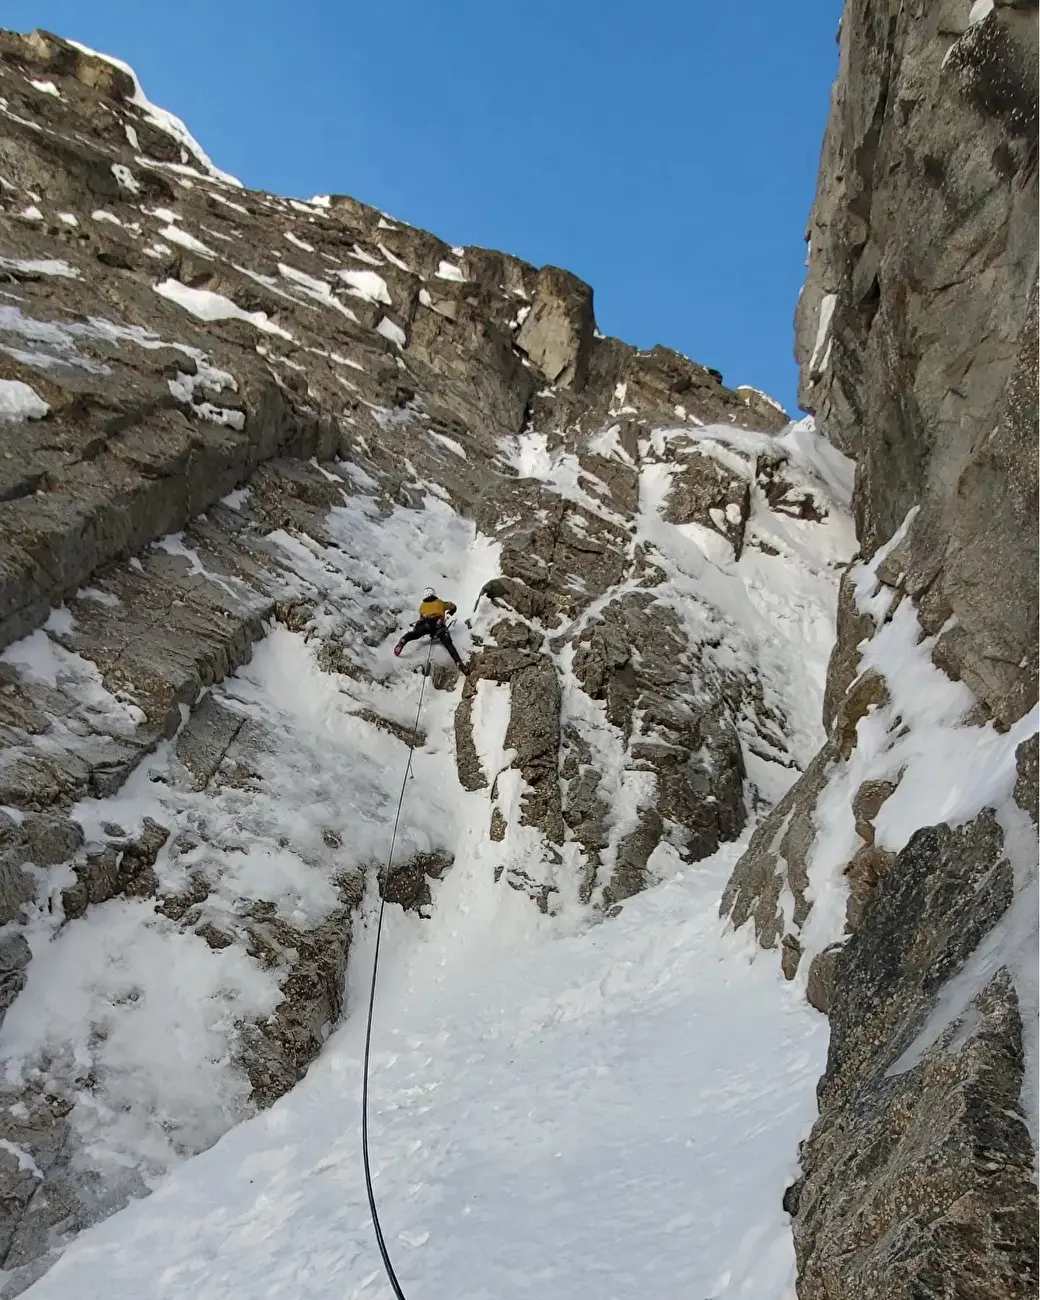 Річард Тірабоші (Richard Tiraboschi) та Джузеппе Відоні (Giuseppe Vidoni) на маршруті «Couloir Noire» (400 м, AI4, M5) на горі Егюїй-Нуар-Де-Пютерей в гірському масиві Монблан. Фото Giuseppe Vidoni